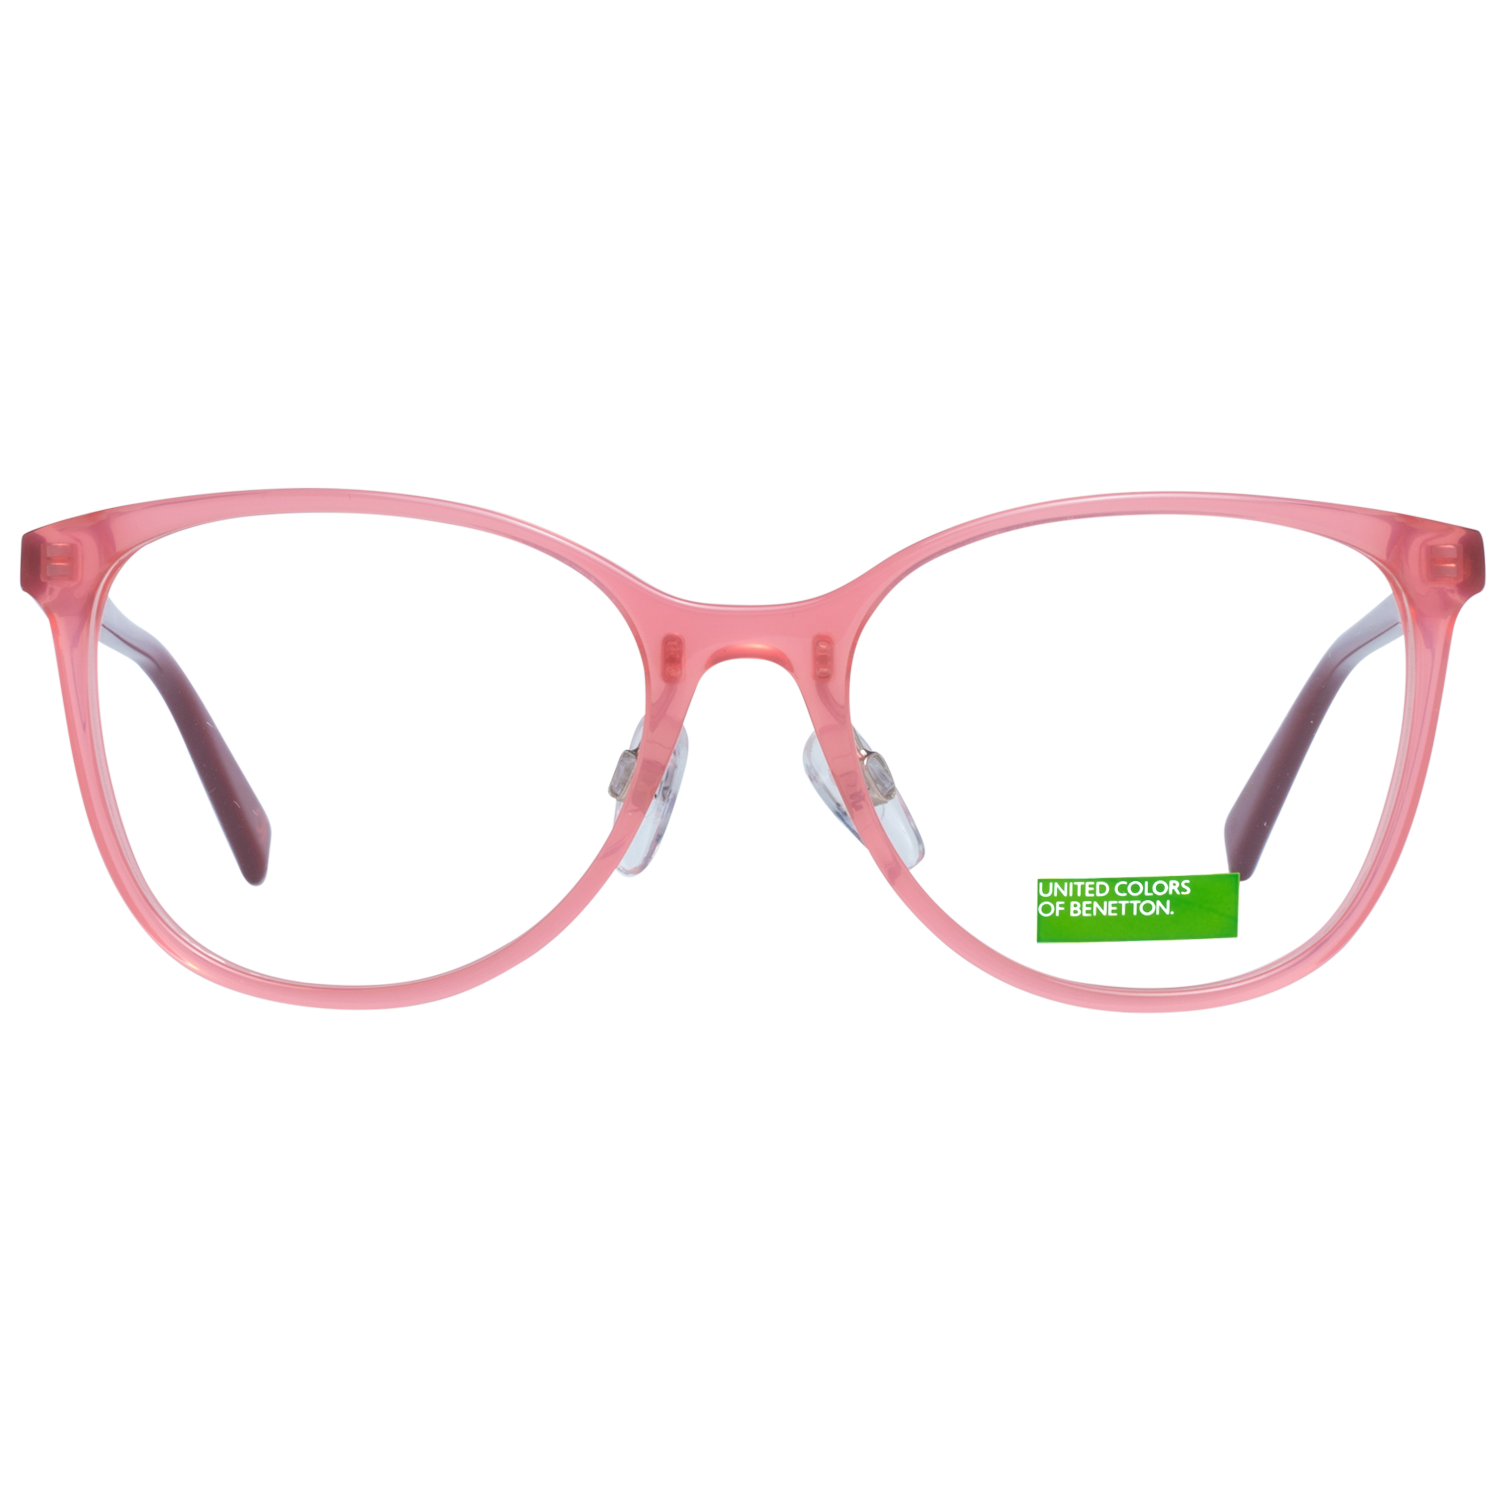 Benetton Frames Benetton Glasses Frames BEO1027 283 52 Eyeglasses Eyewear UK USA Australia 